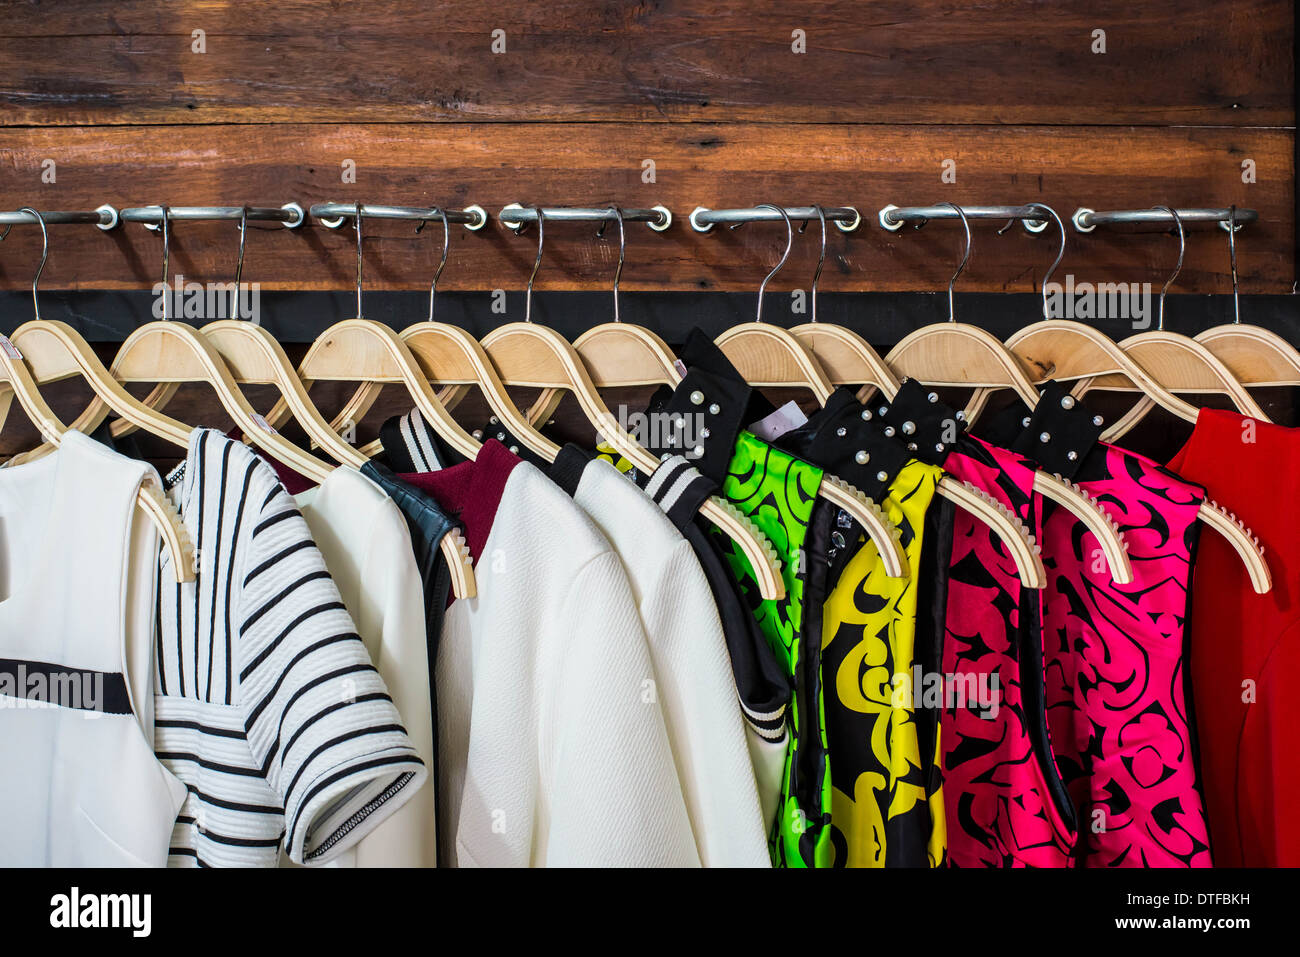 https://c8.alamy.com/comp/DTFBKH/many-blouses-on-hangers-in-the-dressing-room-DTFBKH.jpg